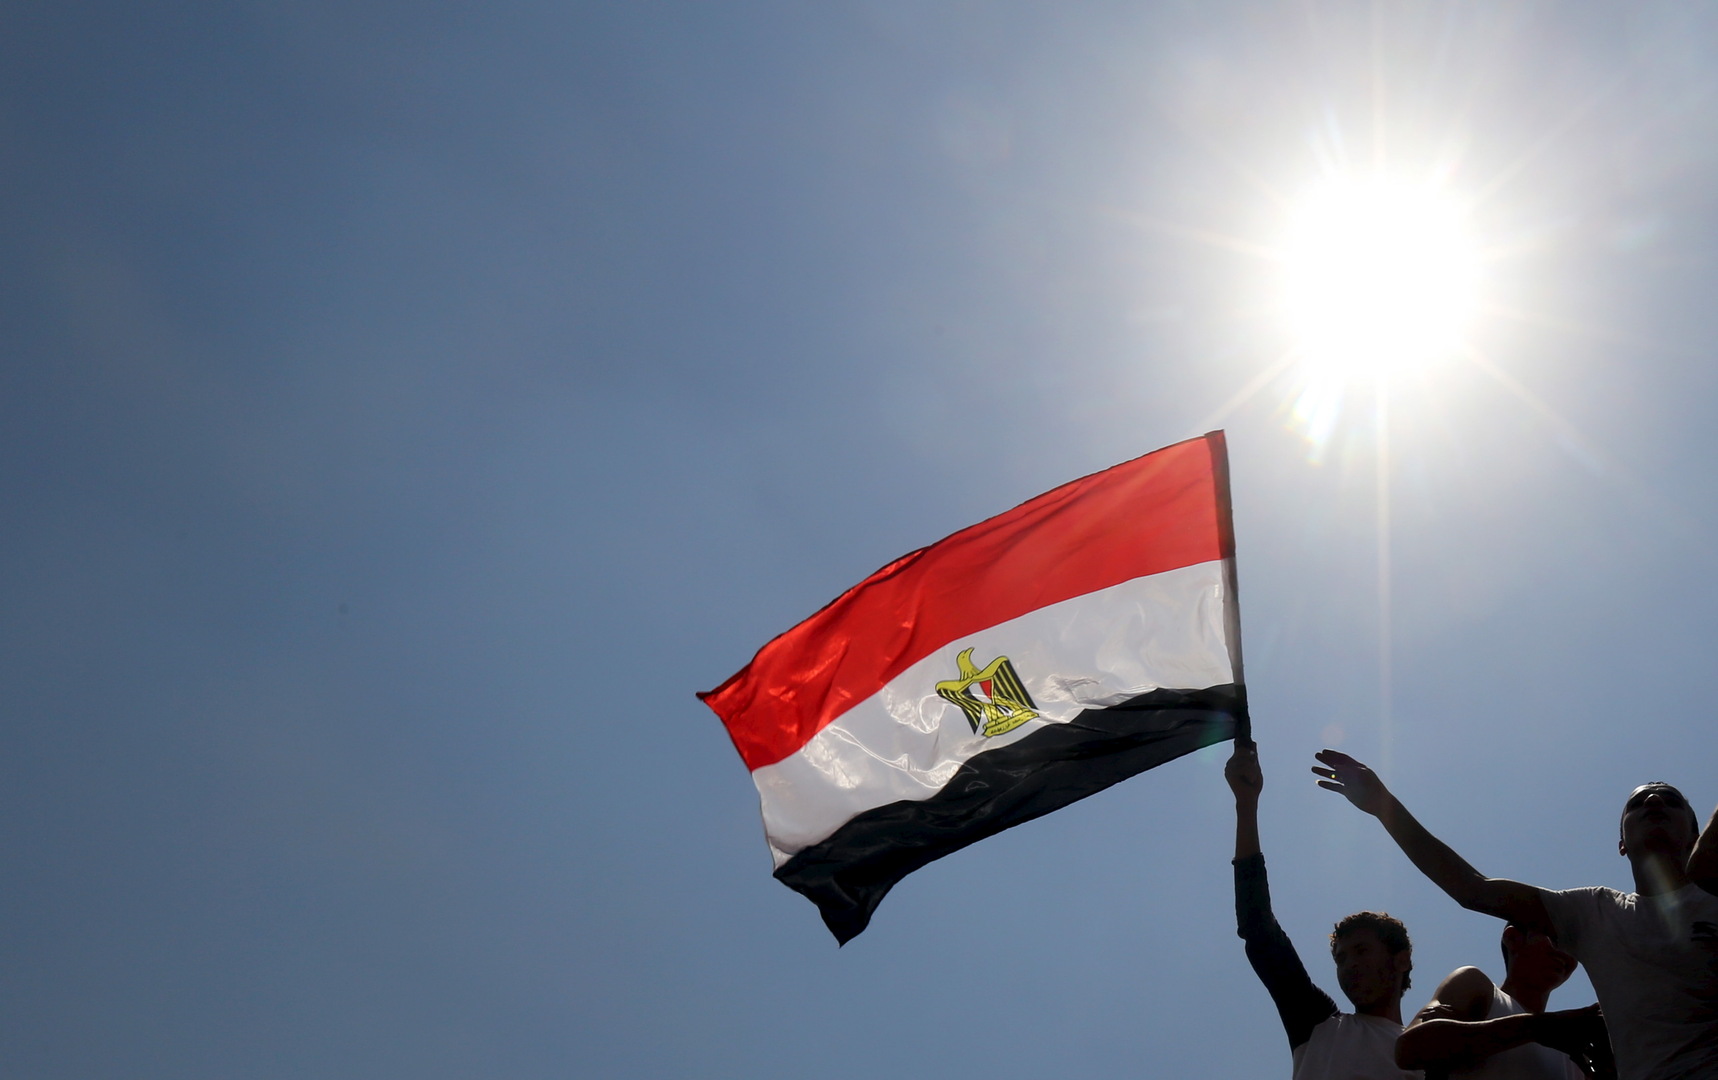 باحث مصري: السودان بيئة خصبة لتنامي تيارات سلفية جهادية مسلحة والنظام االسابق كان مستقويا بها